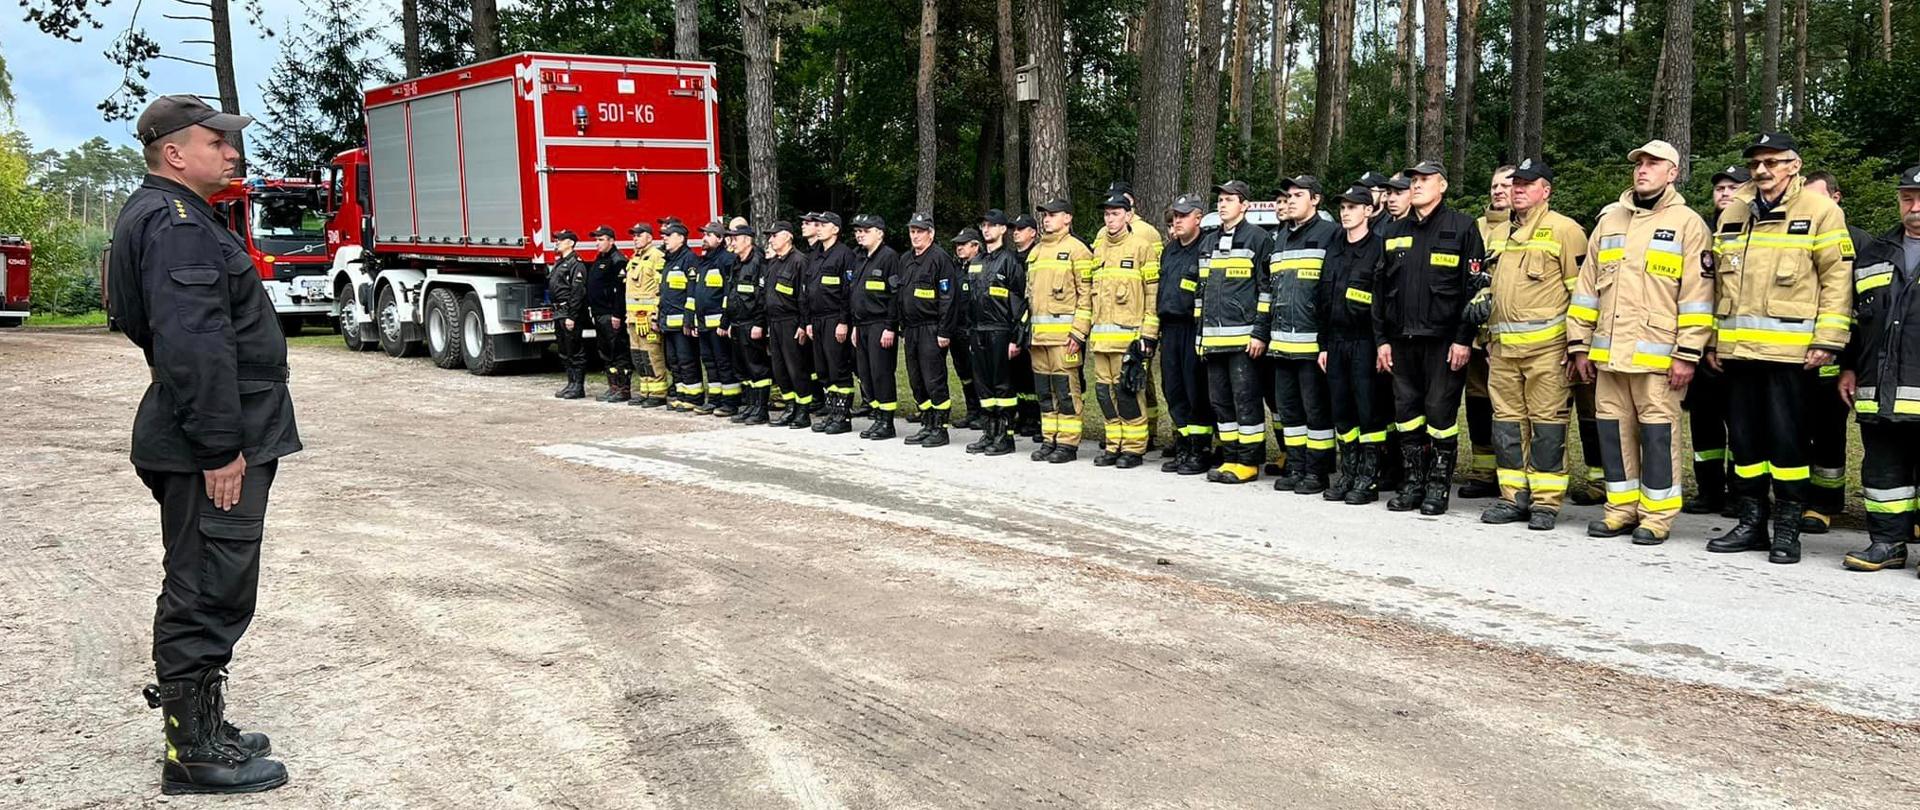 Zbiórka strażacka podczas ćwiczeń odwodu operacyjnego wojewódzkiego.